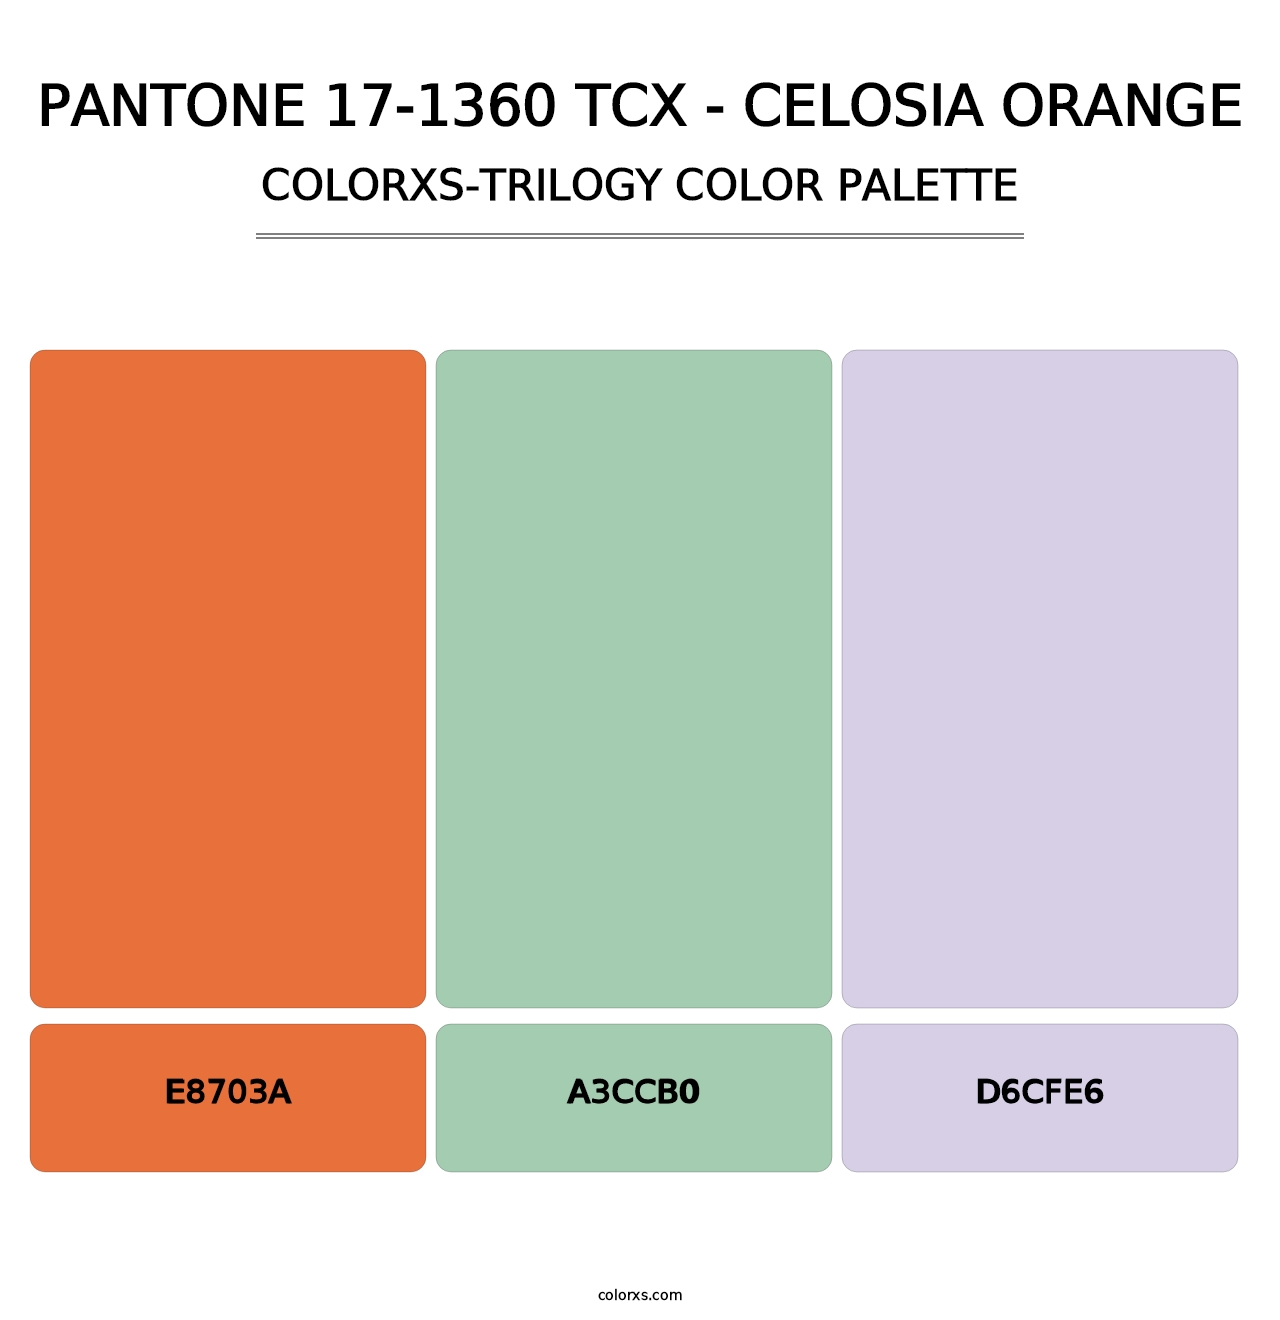 PANTONE 17-1360 TCX - Celosia Orange - Colorxs Trilogy Palette